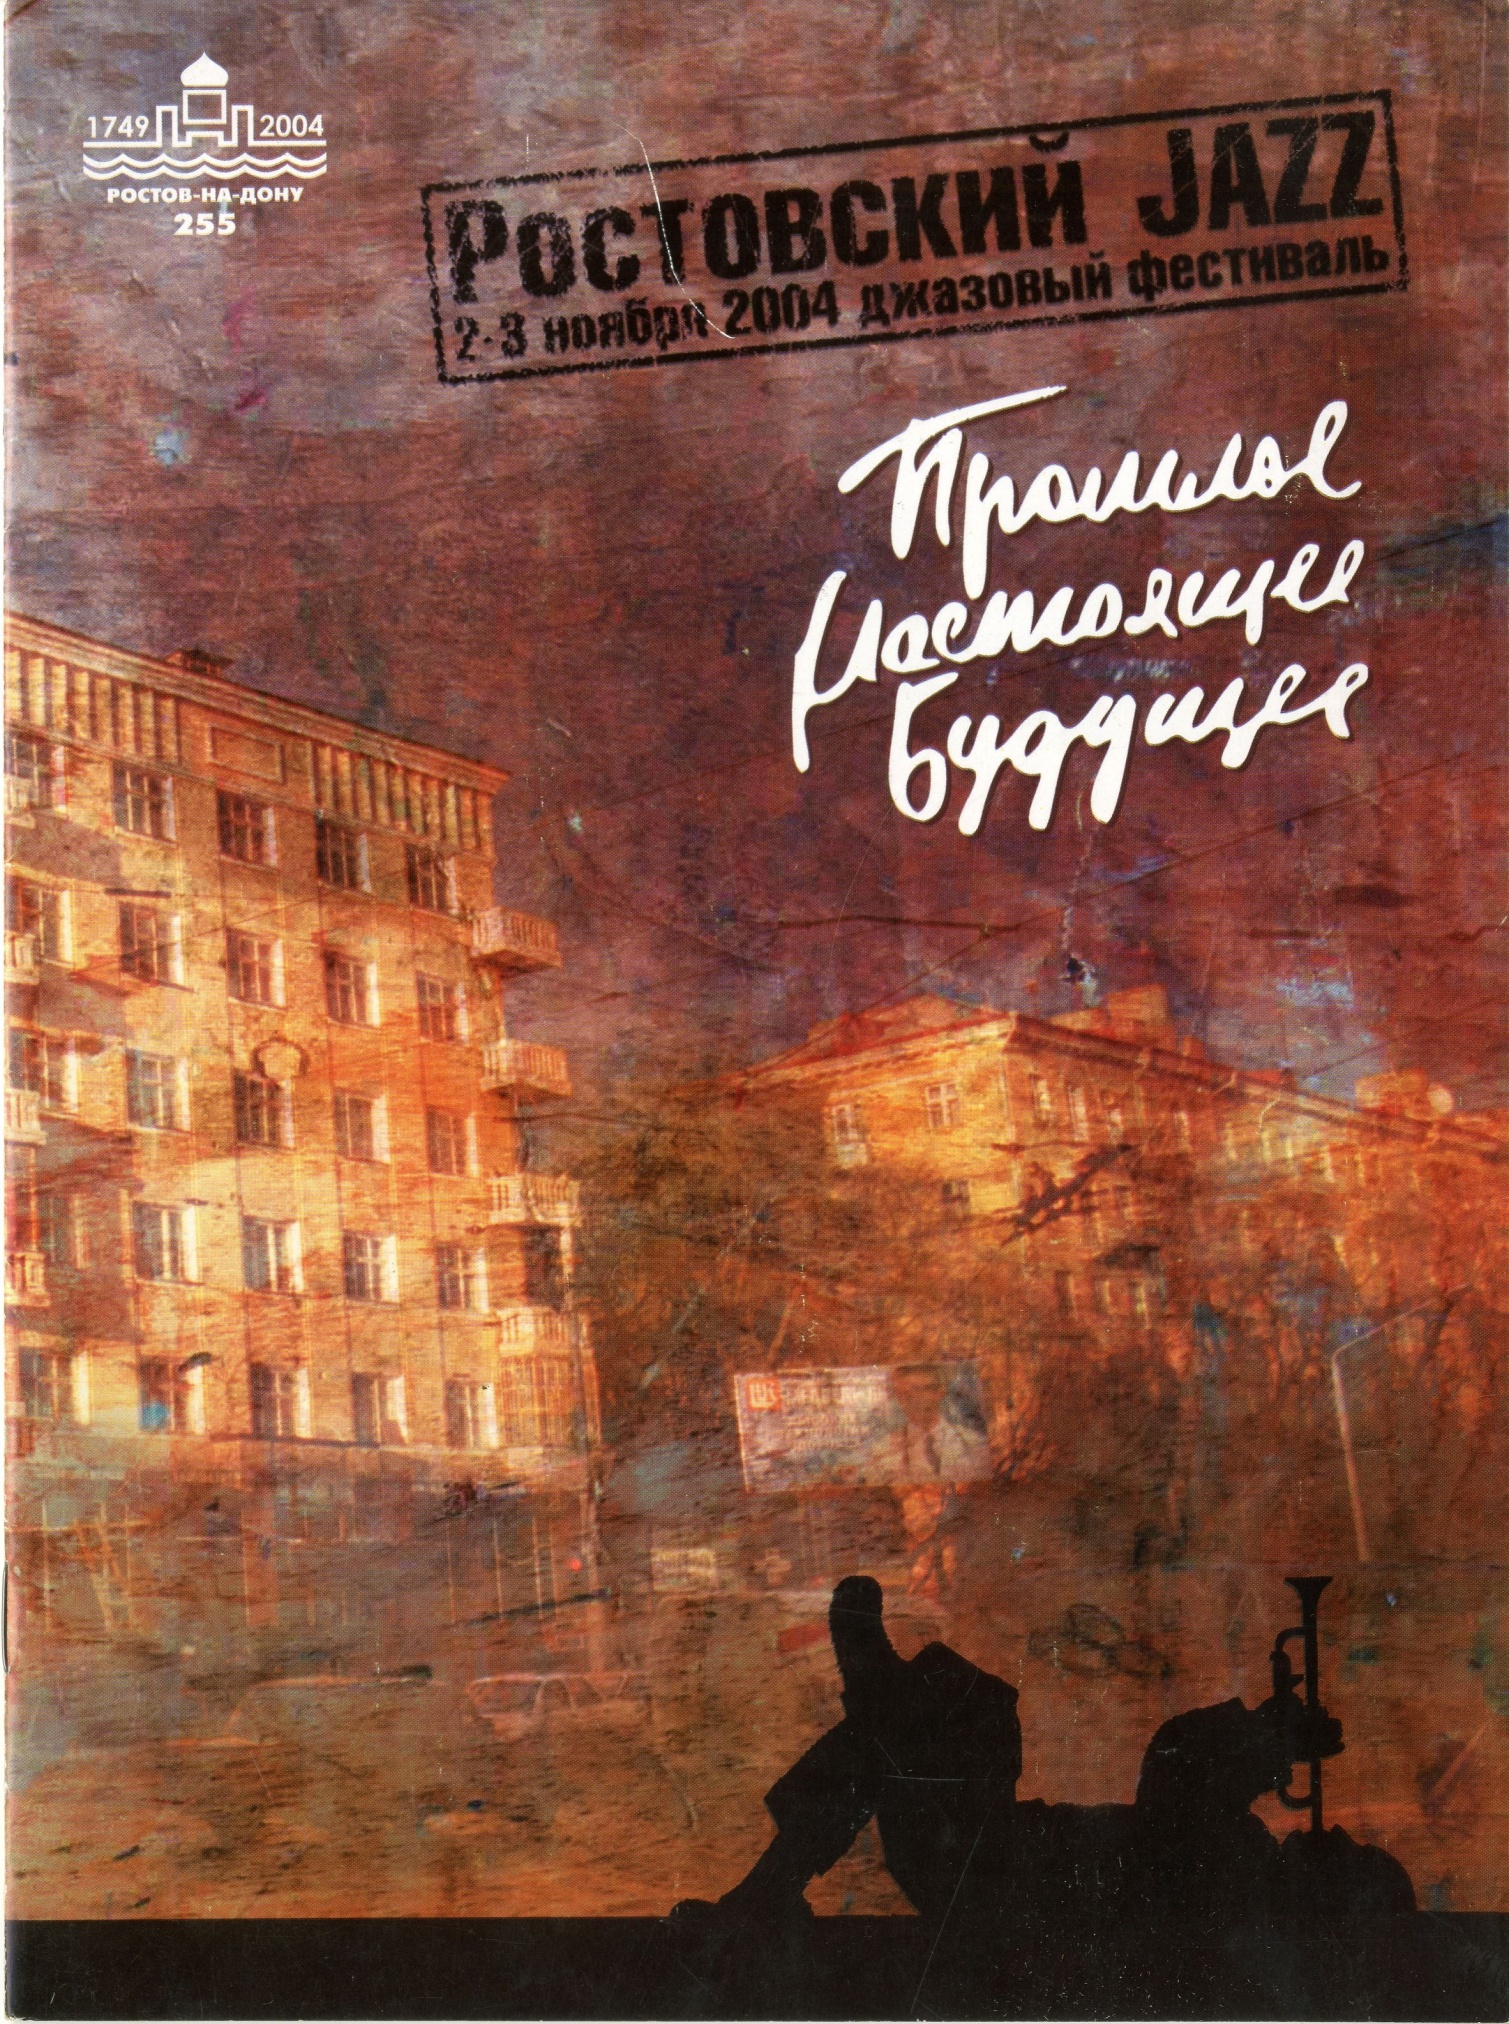 Буклет джазового фестиваля «Ростовский Jazz. Прошлое. Настоящее. Будущее» 2004 г.